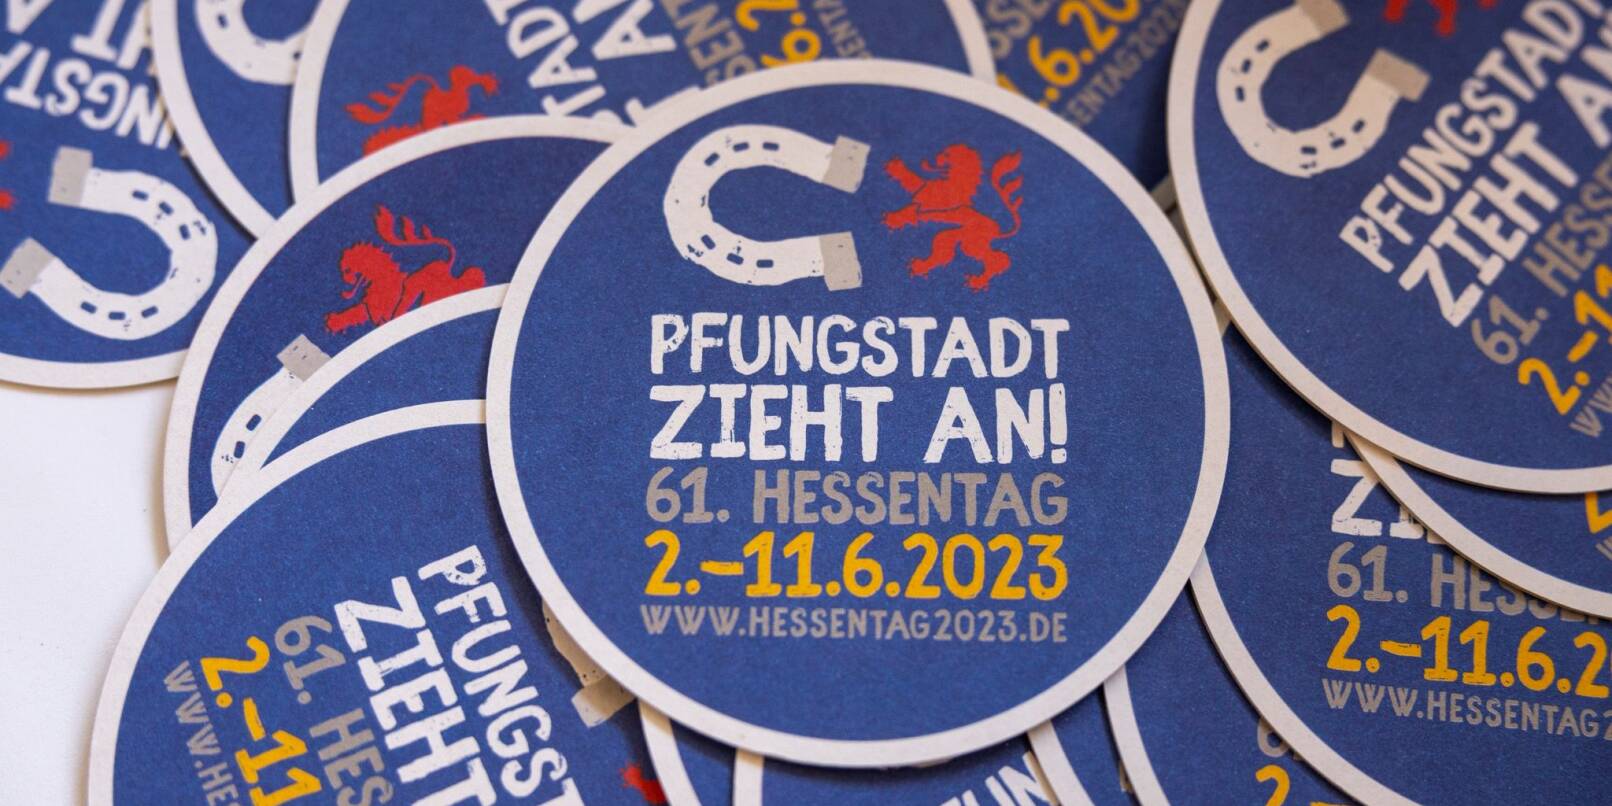 Das Hessentag-Logo ist auf einem Bierdeckel zu sehen.